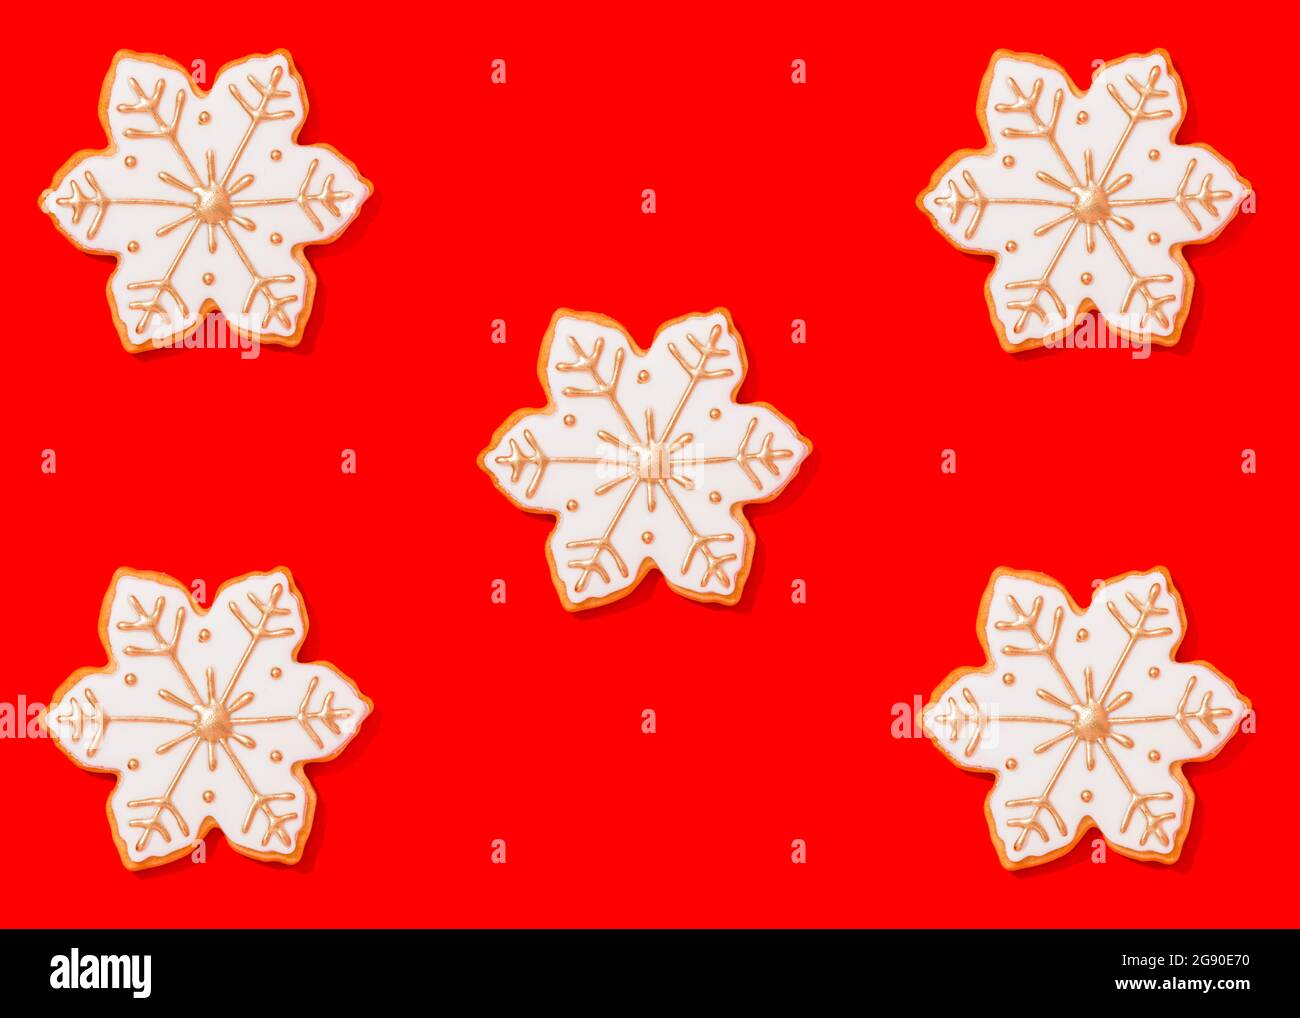 Cinq biscuits de Noël en forme de flocons de neige sur fond rouge vif Banque D'Images